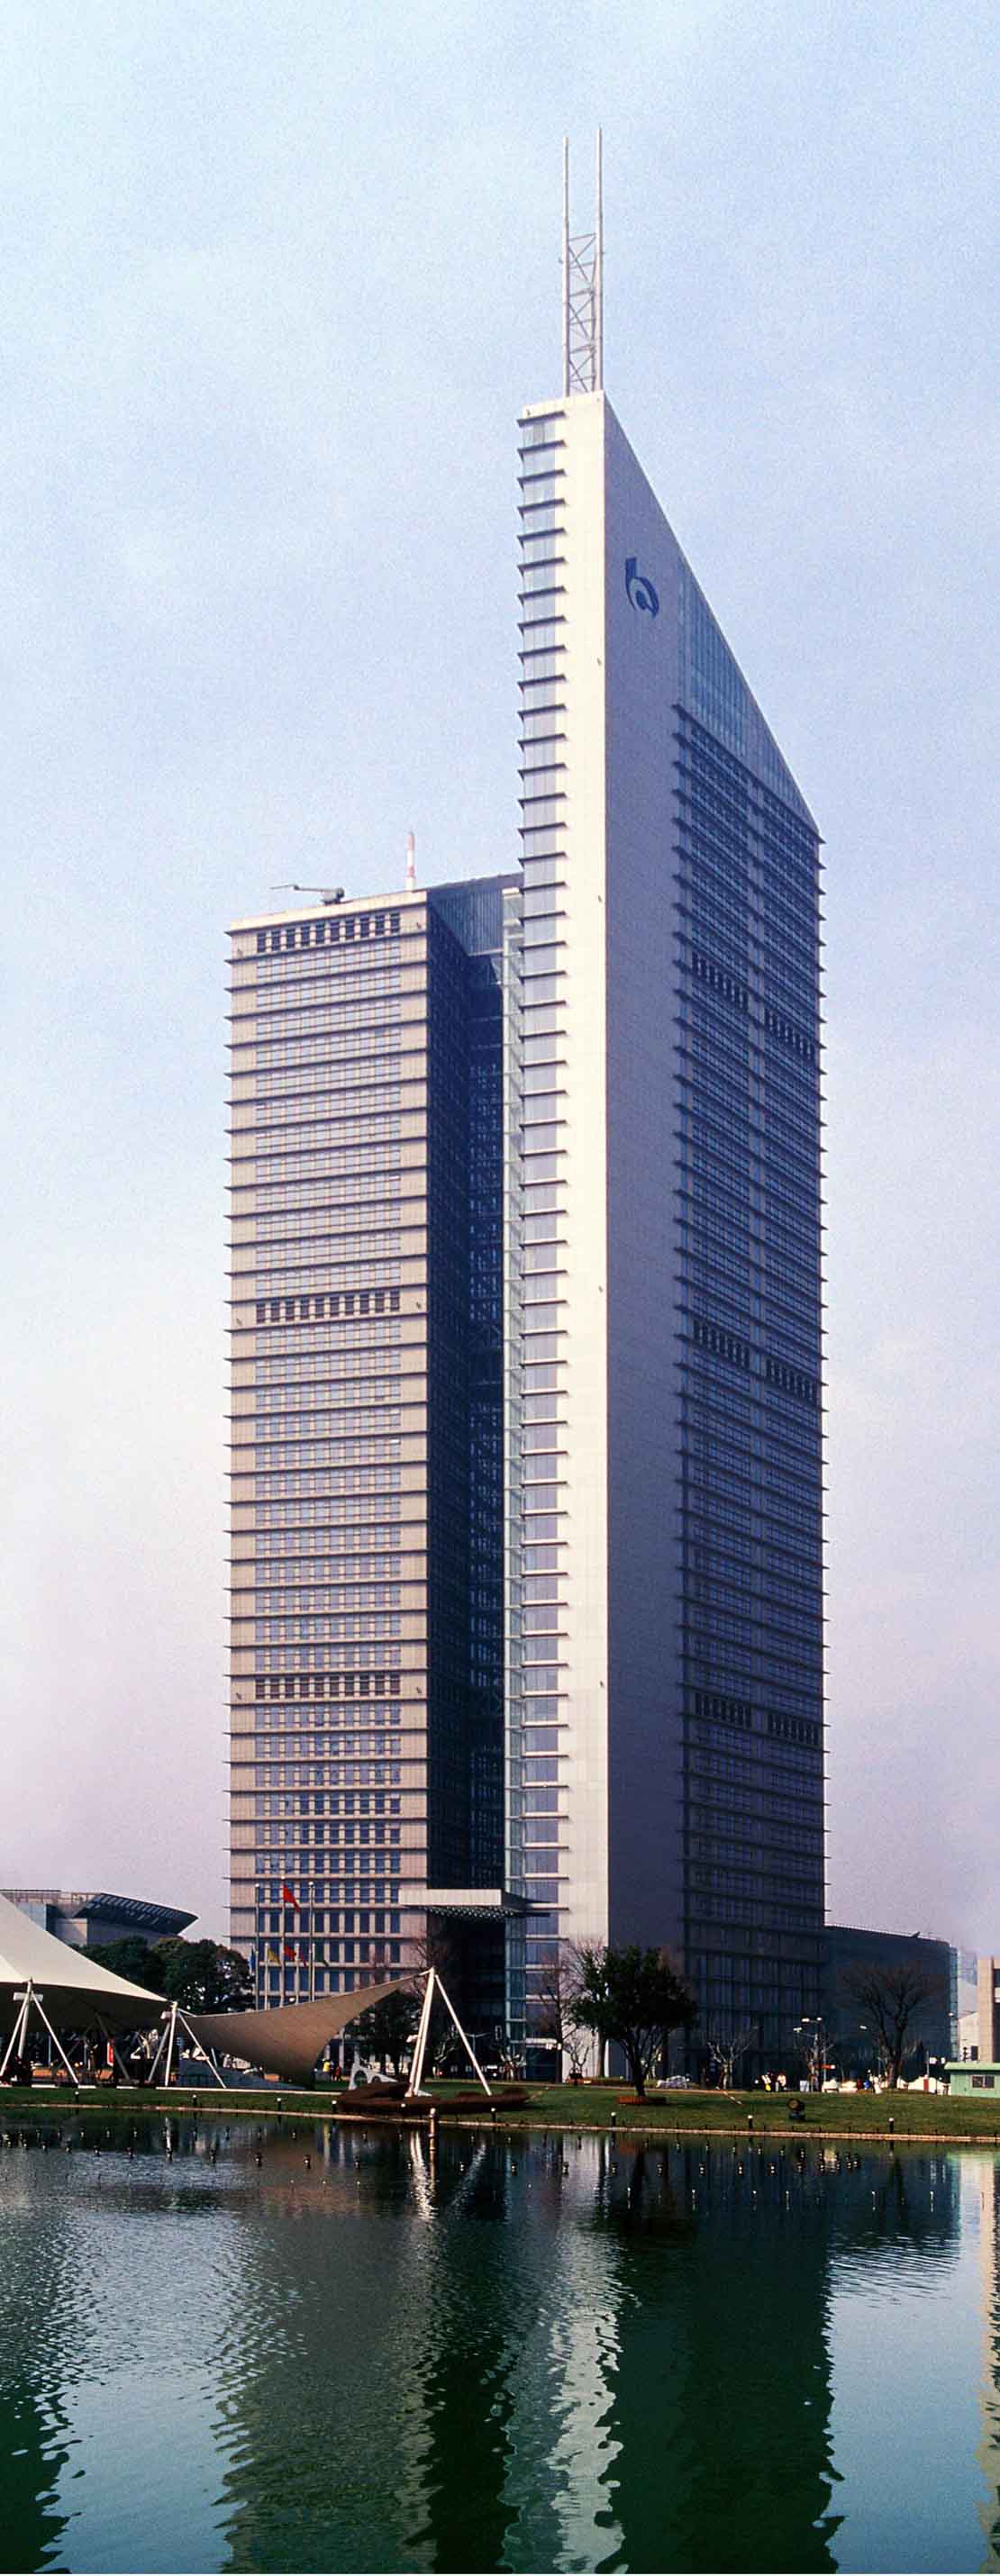 交银金融大厦 